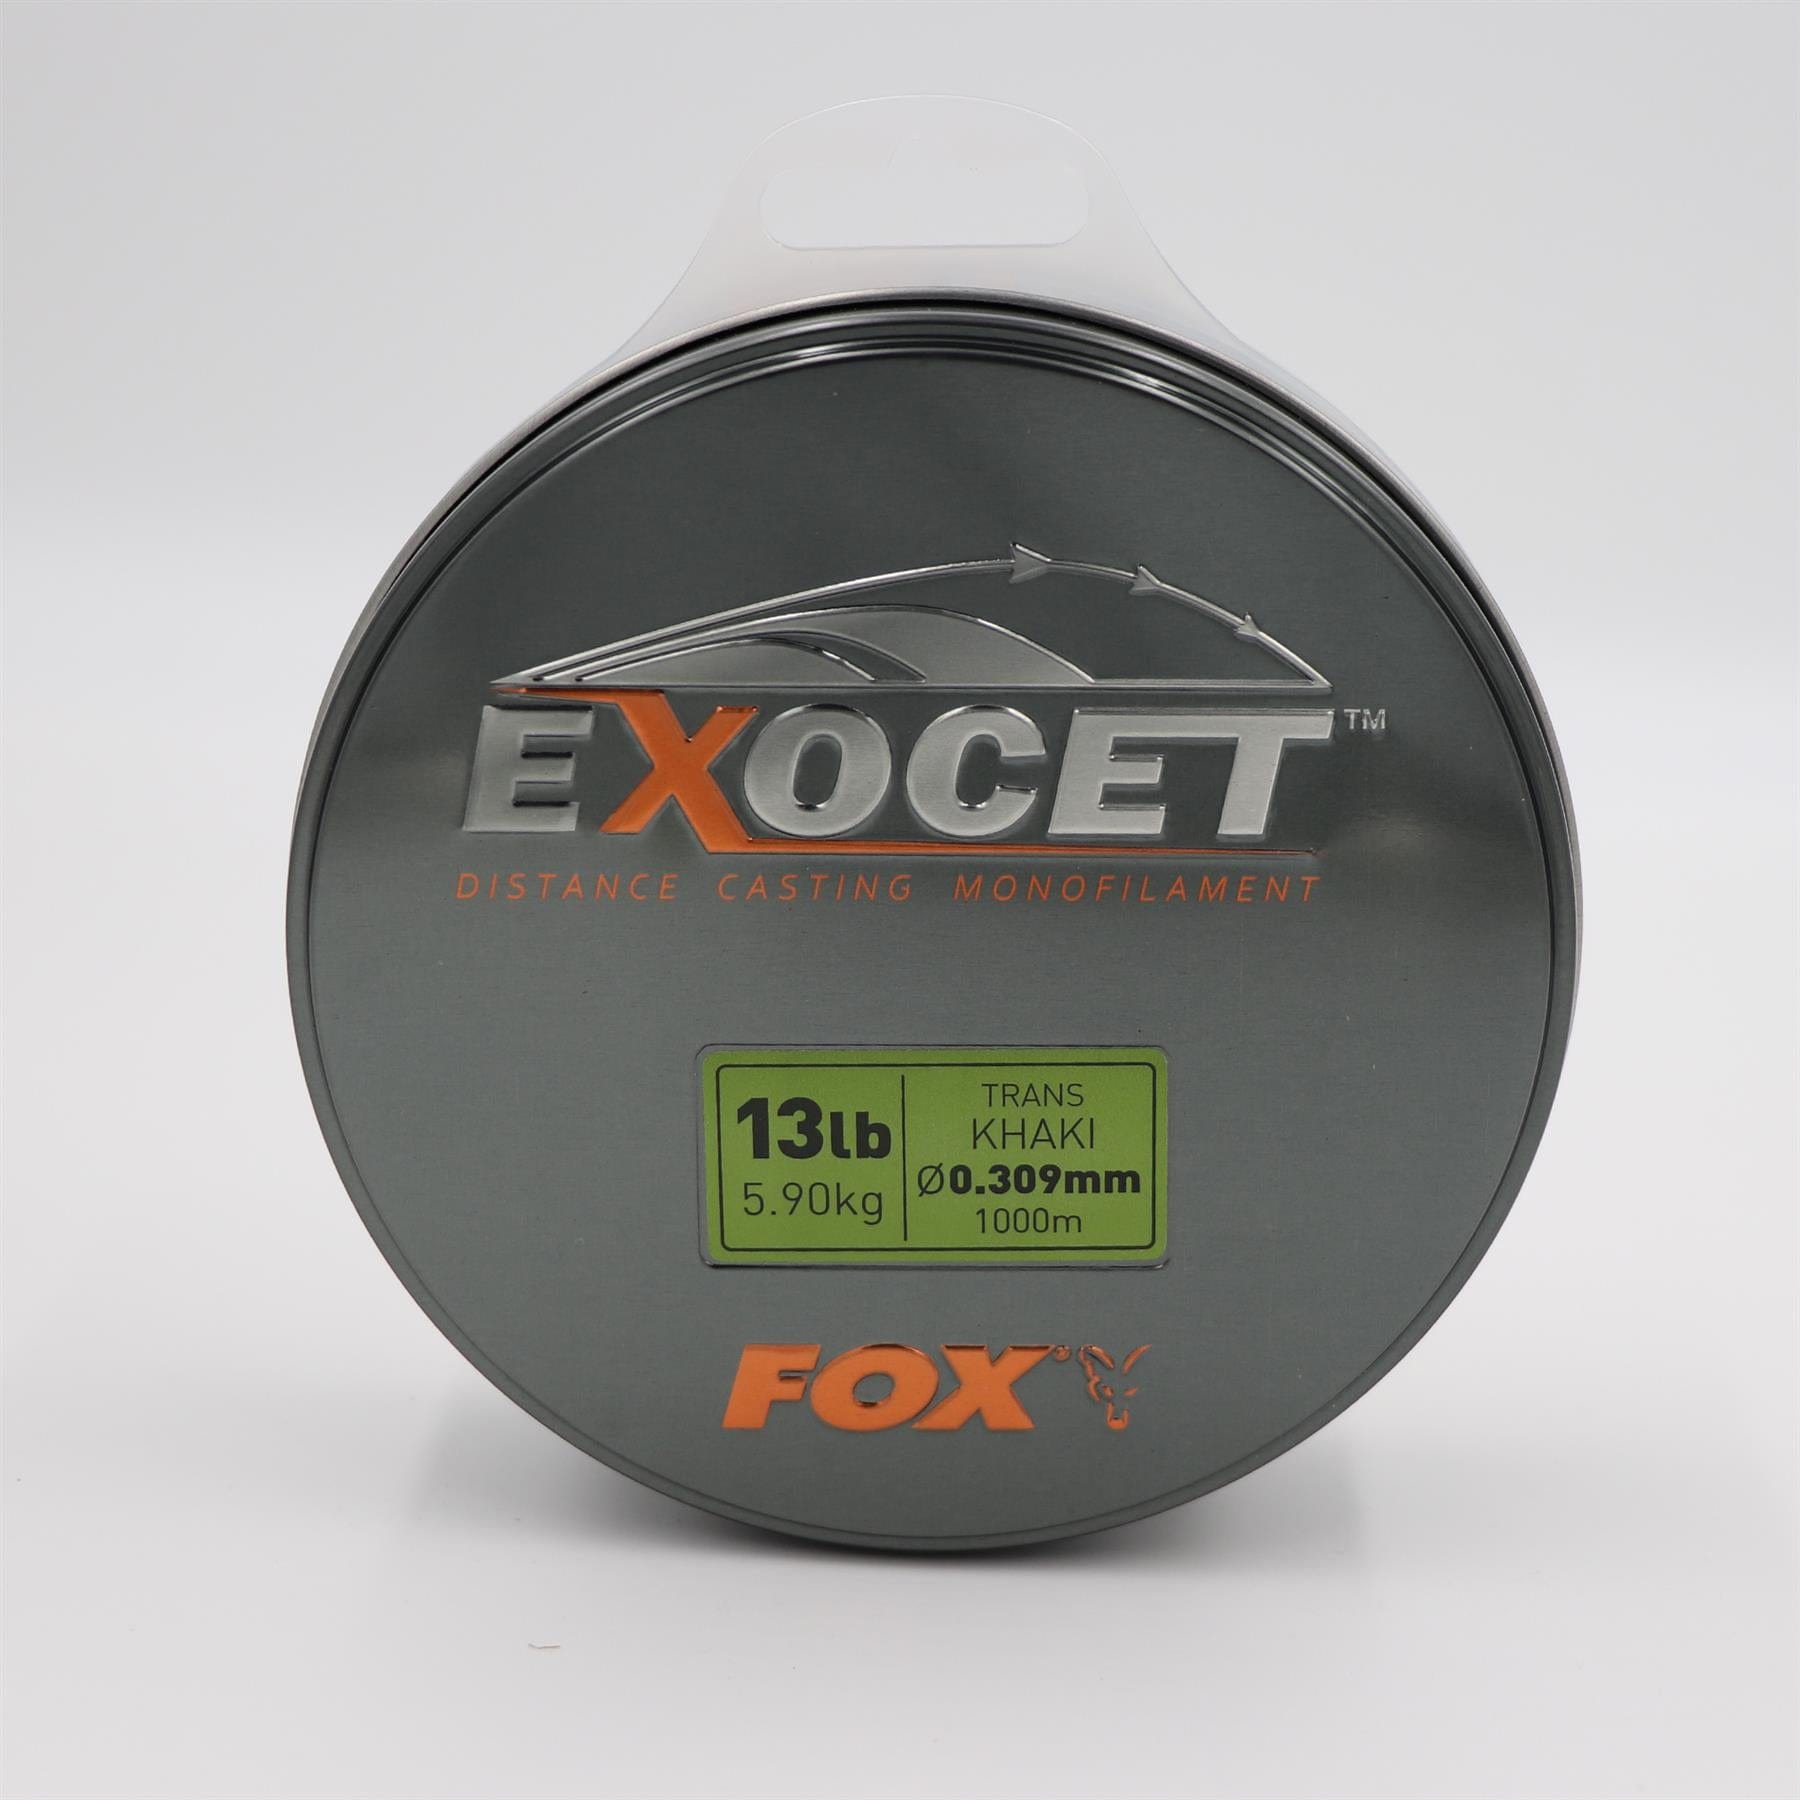 FOX Exocet Mono Trans Khaki - 0.309mm 13lbs / 5.90kgs.